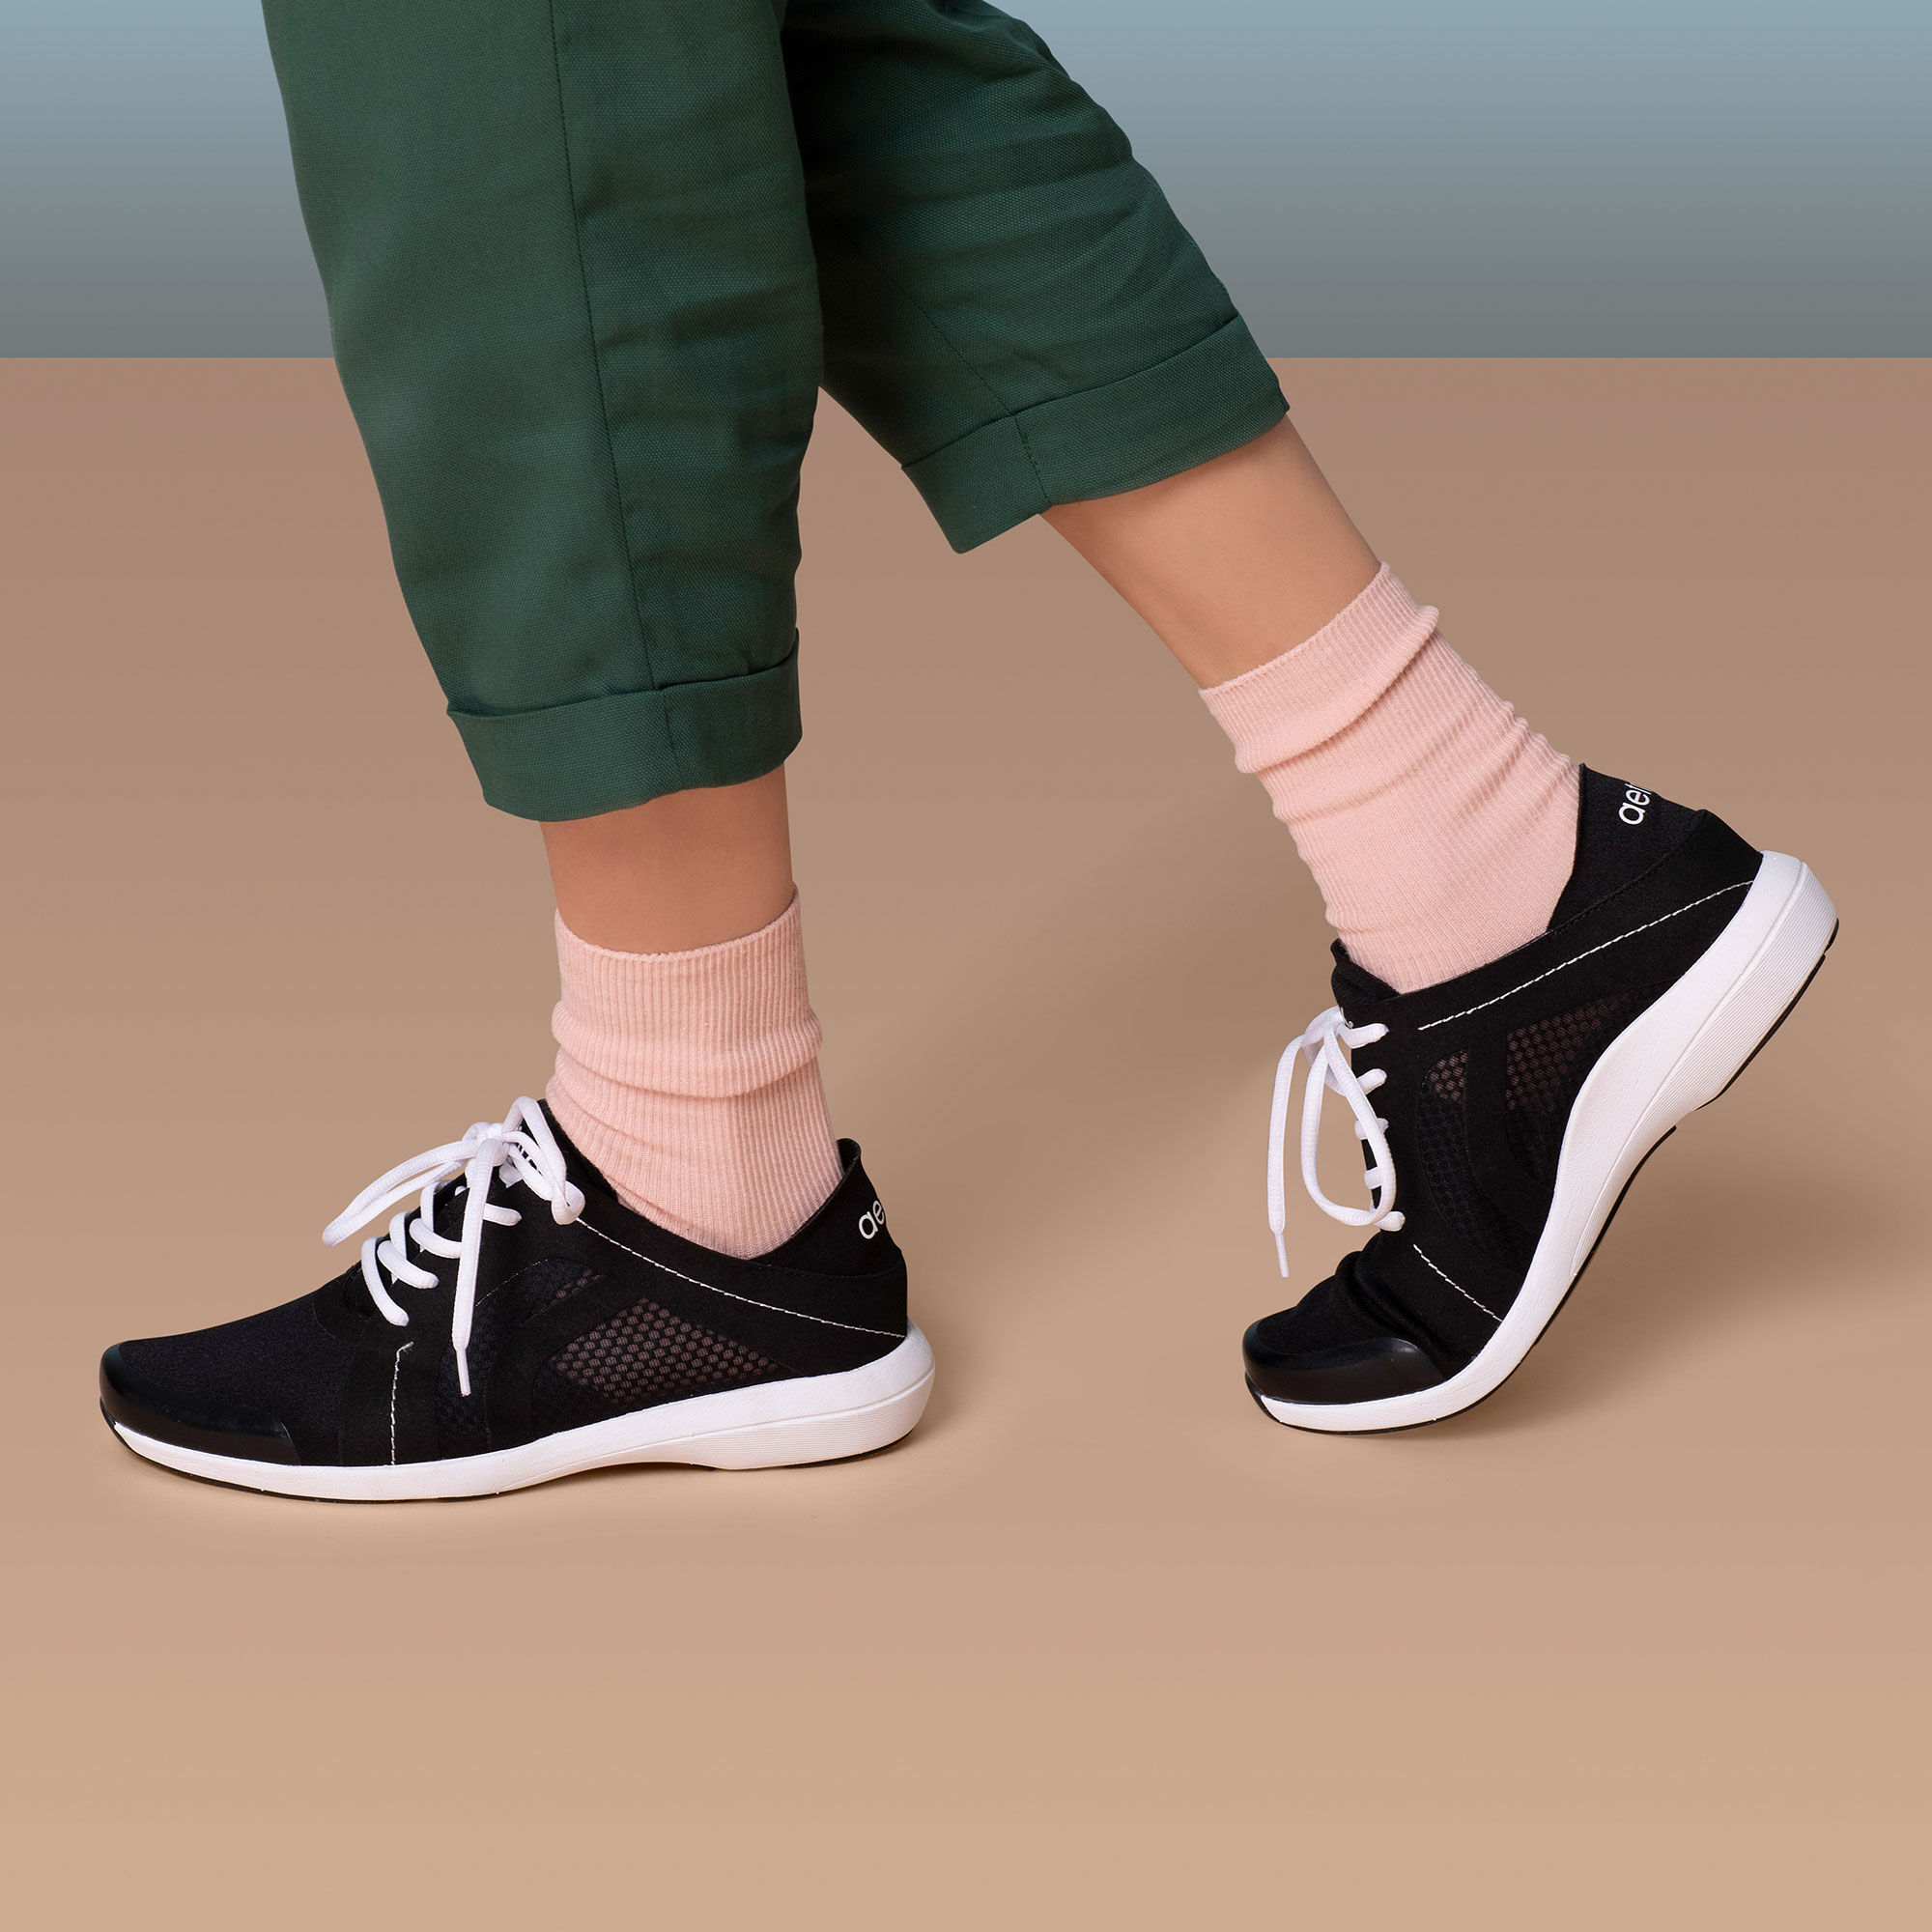 Sloane Berries Sneaker - Black